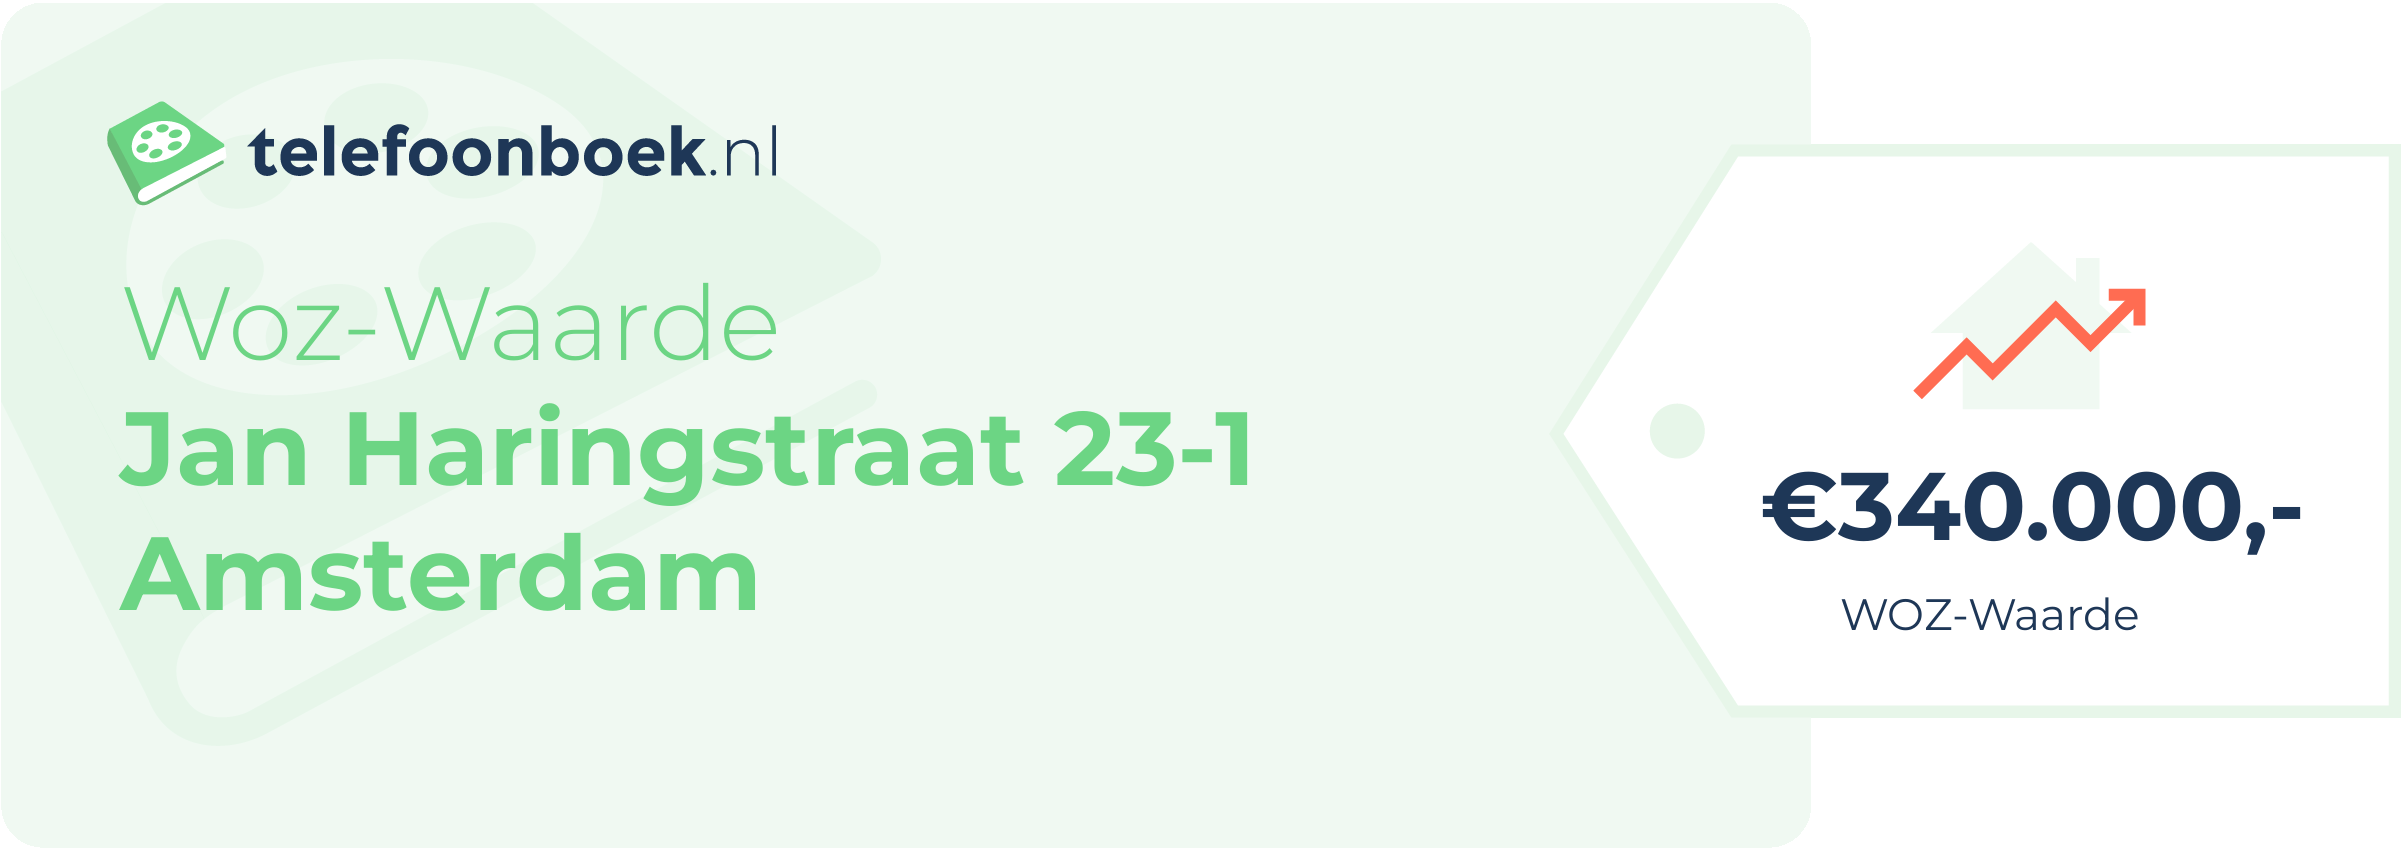 WOZ-waarde Jan Haringstraat 23-1 Amsterdam